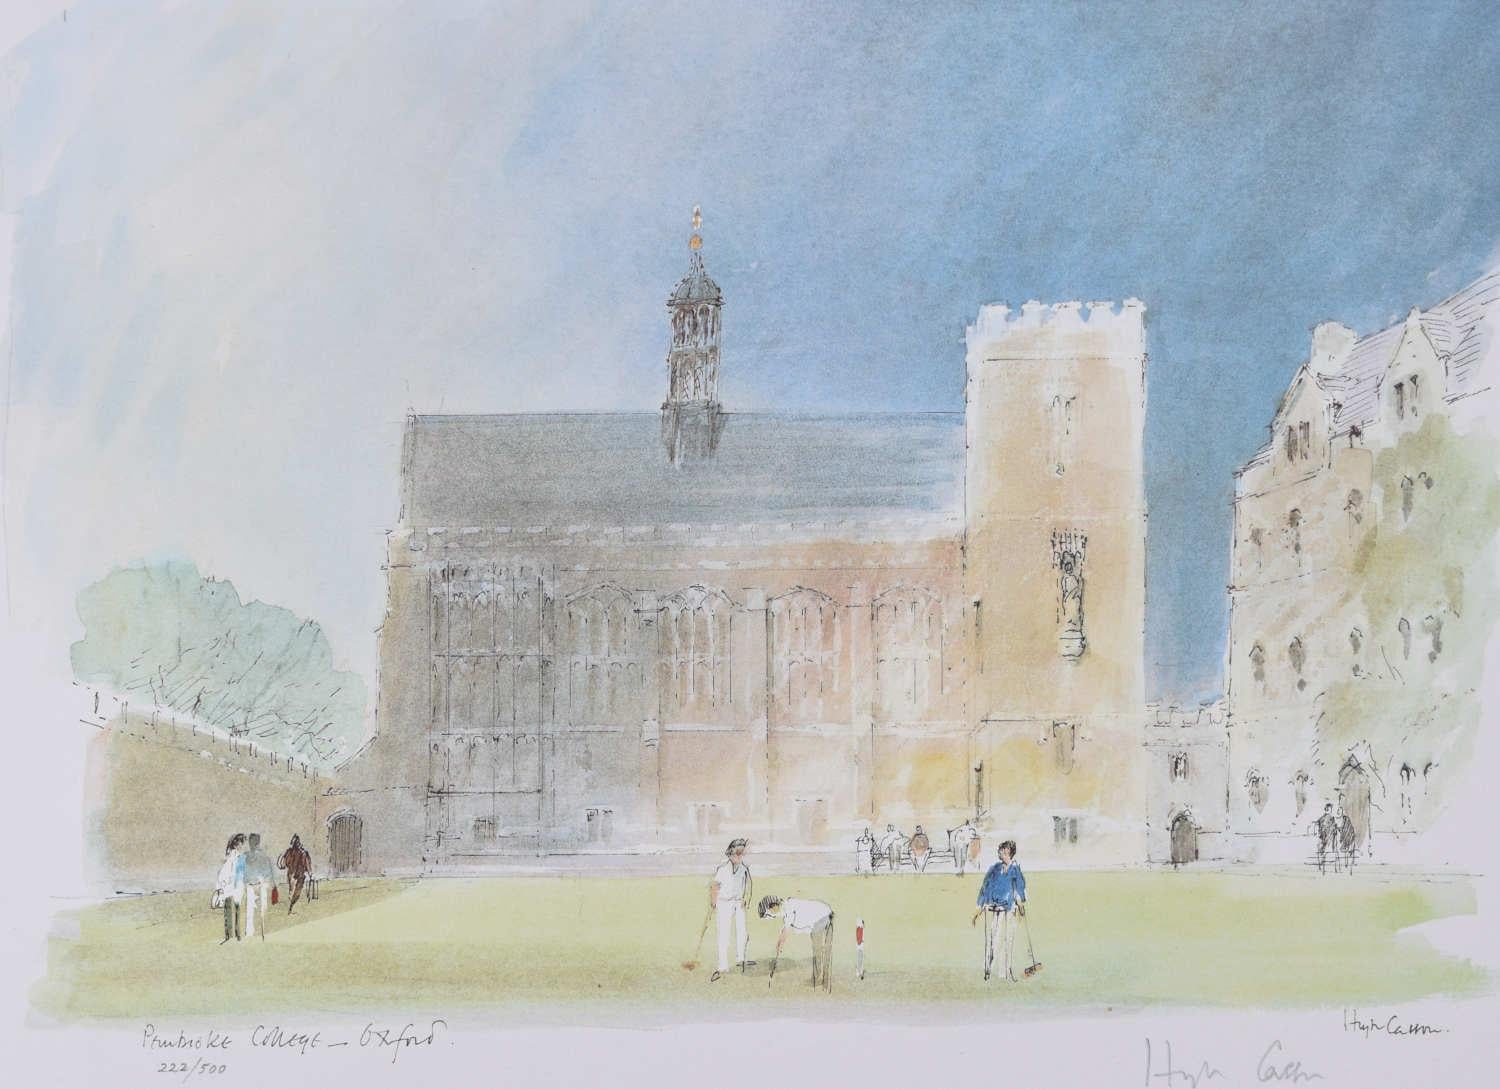 Landscape Print Hugh Casson - A.I.C. Pembroke College Oxford estampes signées à tirage limité c. 1980